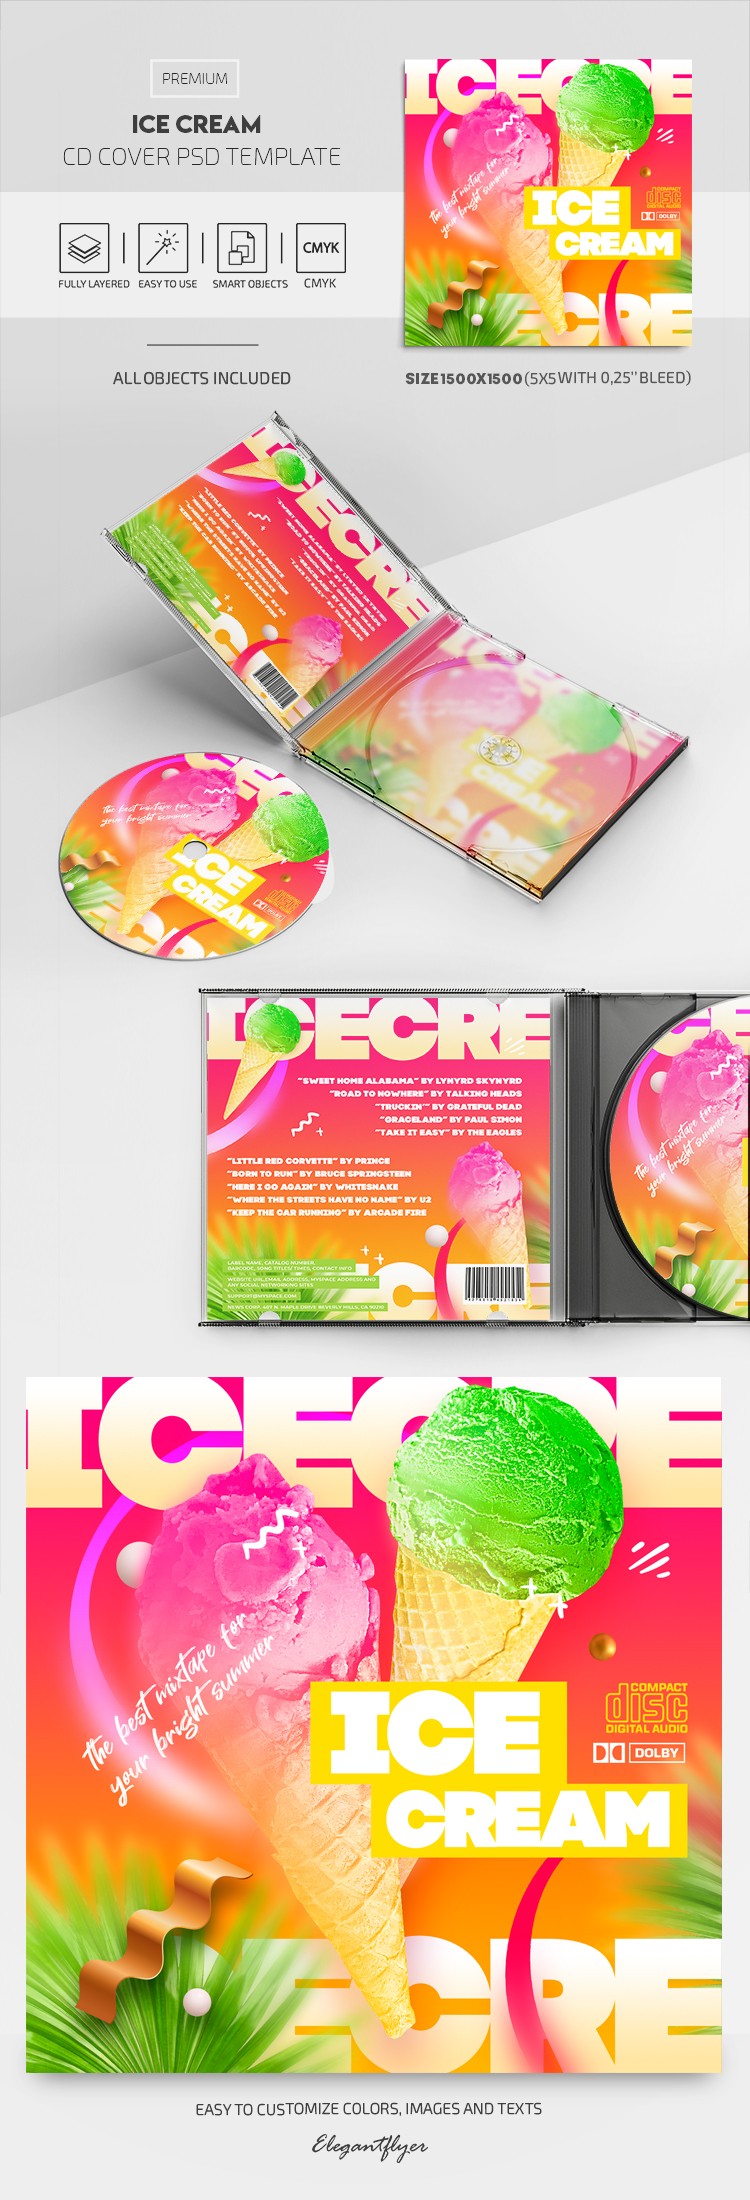 Capa do CD Sorvete by ElegantFlyer